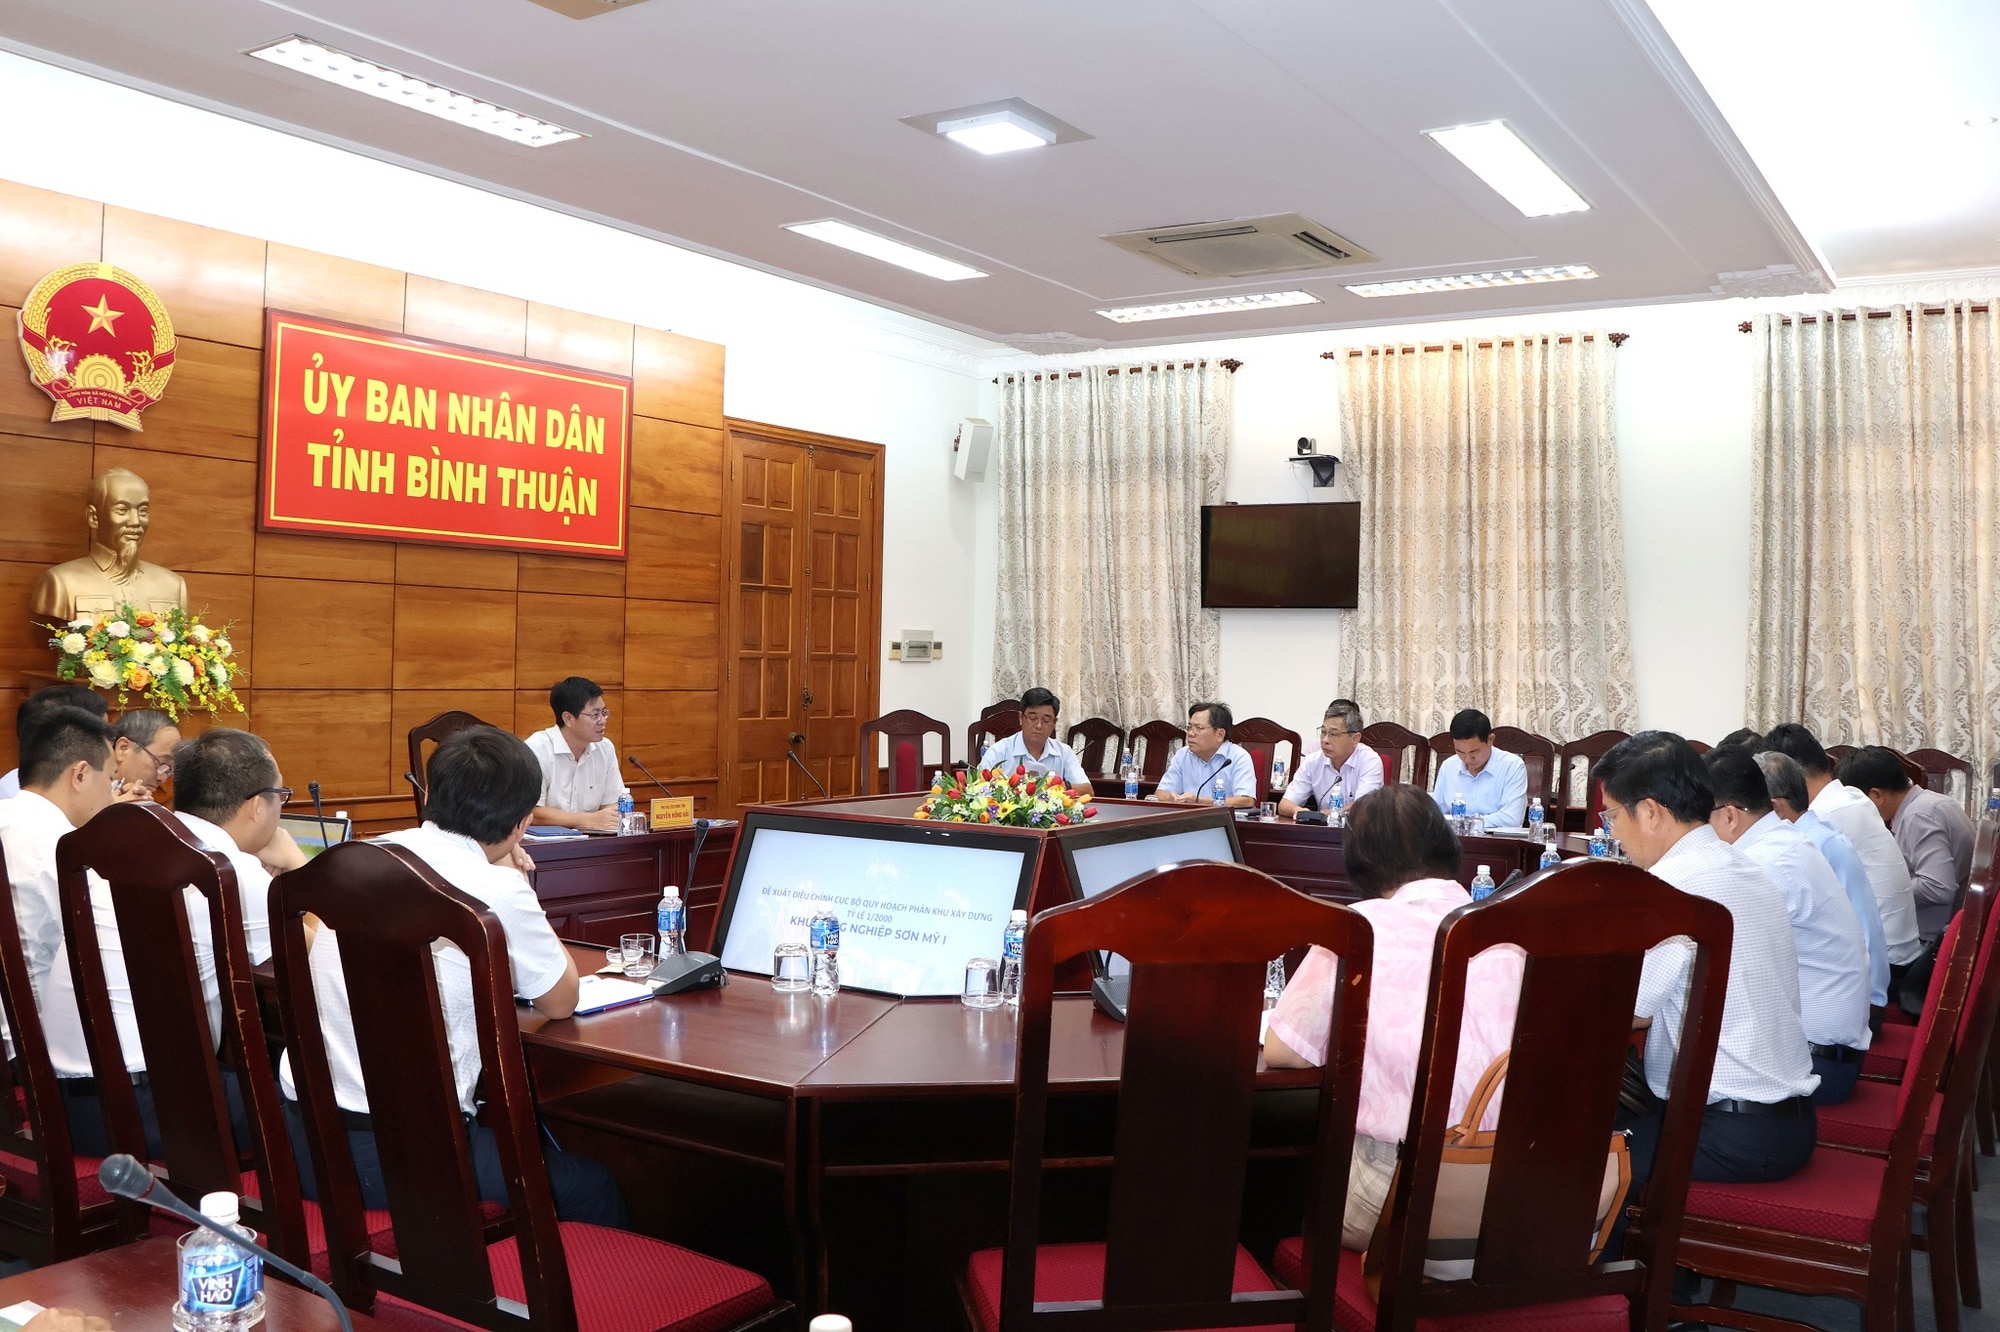 Phó chủ tịch UBND tỉnh Bình Thuận Nguyễn Hồng Hải chủ trì họp cùng các sở ngành tháo gỡ vướng mắc, đẩy nhanh tiến độ dự án KCN Sơn Mỹ 1 tại cuộc họp chiều 13.5